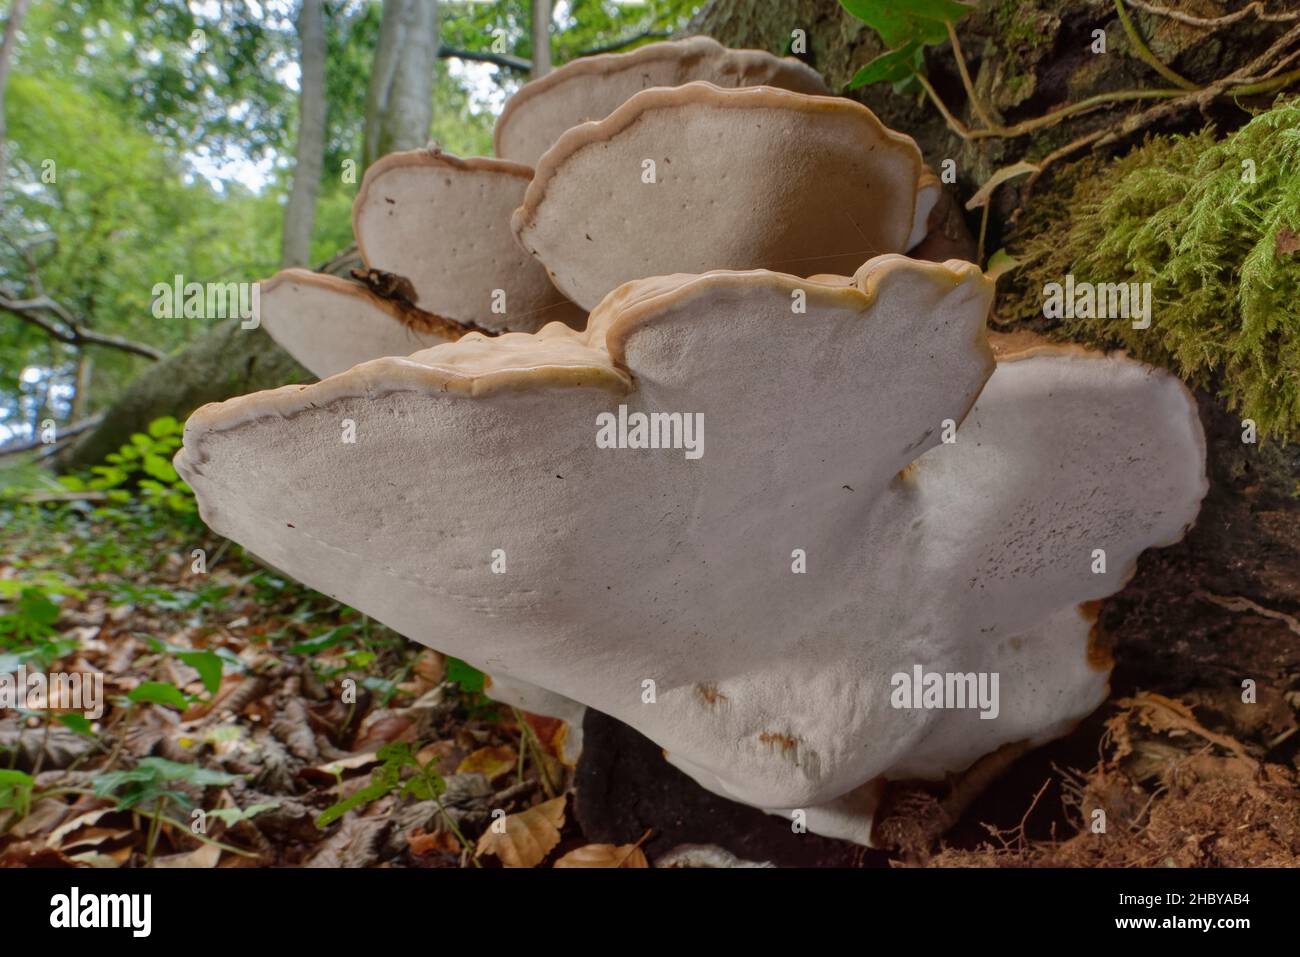 Fungi giganti della staffa dell'elmo (Rigidoporus ulmarius) gruppo che cresce su un tronco di Faggio caduto (Fagus sylvatica) in bosco, Gloucestershire, Regno Unito. Foto Stock